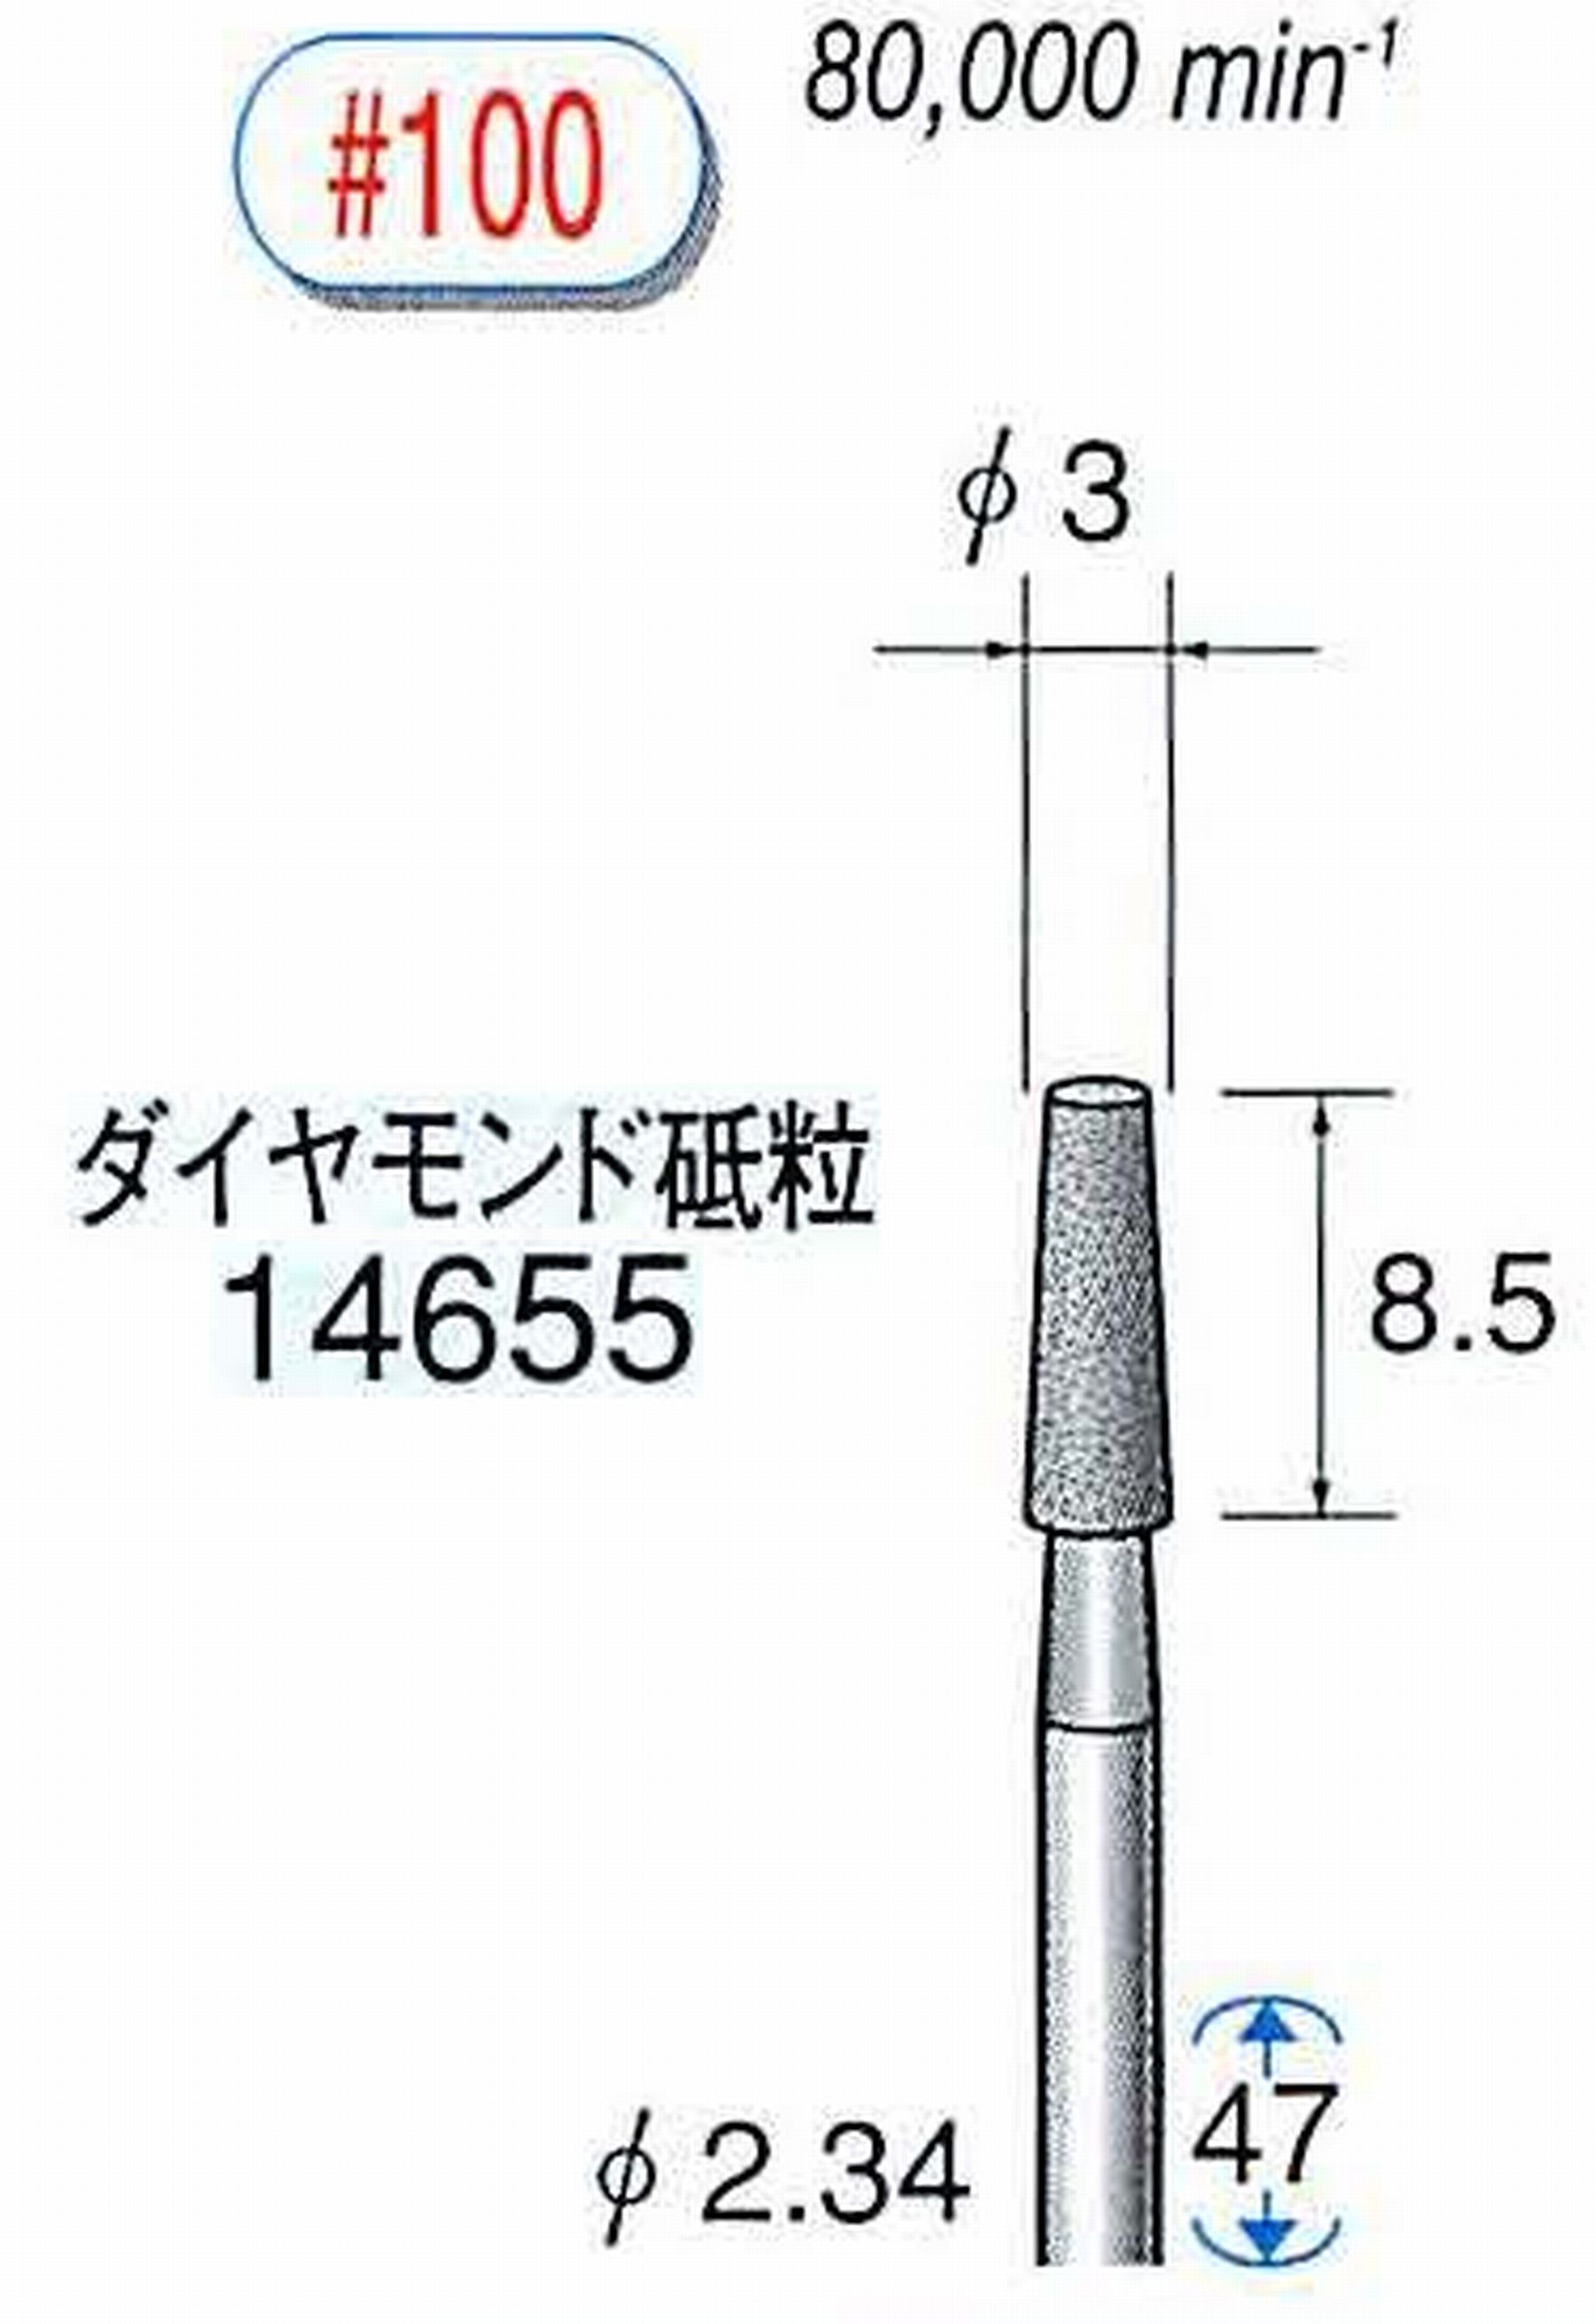 ナカニシ/NAKANISHI ダイヤモンドバー メタルボンドタイプ ダイヤモンド砥粒 軸径(シャンク)φ2.34mm 14655